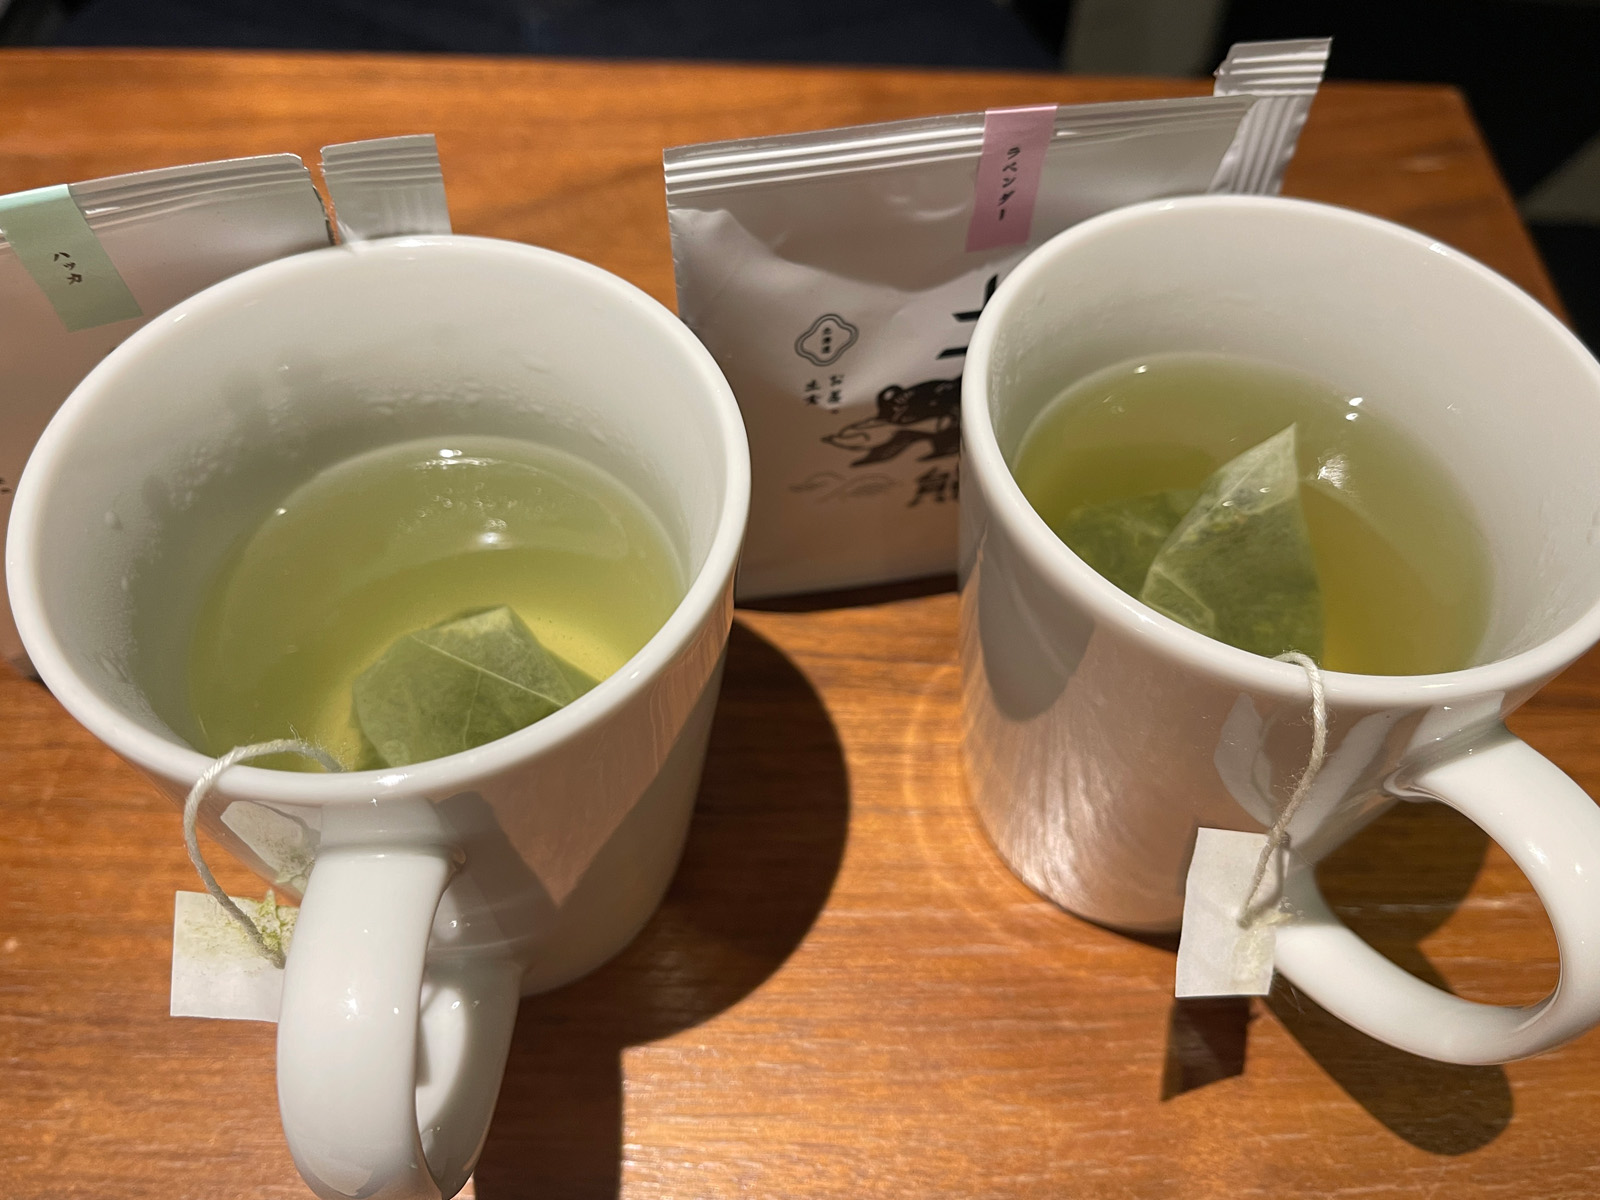 「お茶の土倉」のハッカ・ラベンダー・とうきび茶買ったよ！／北海道土産